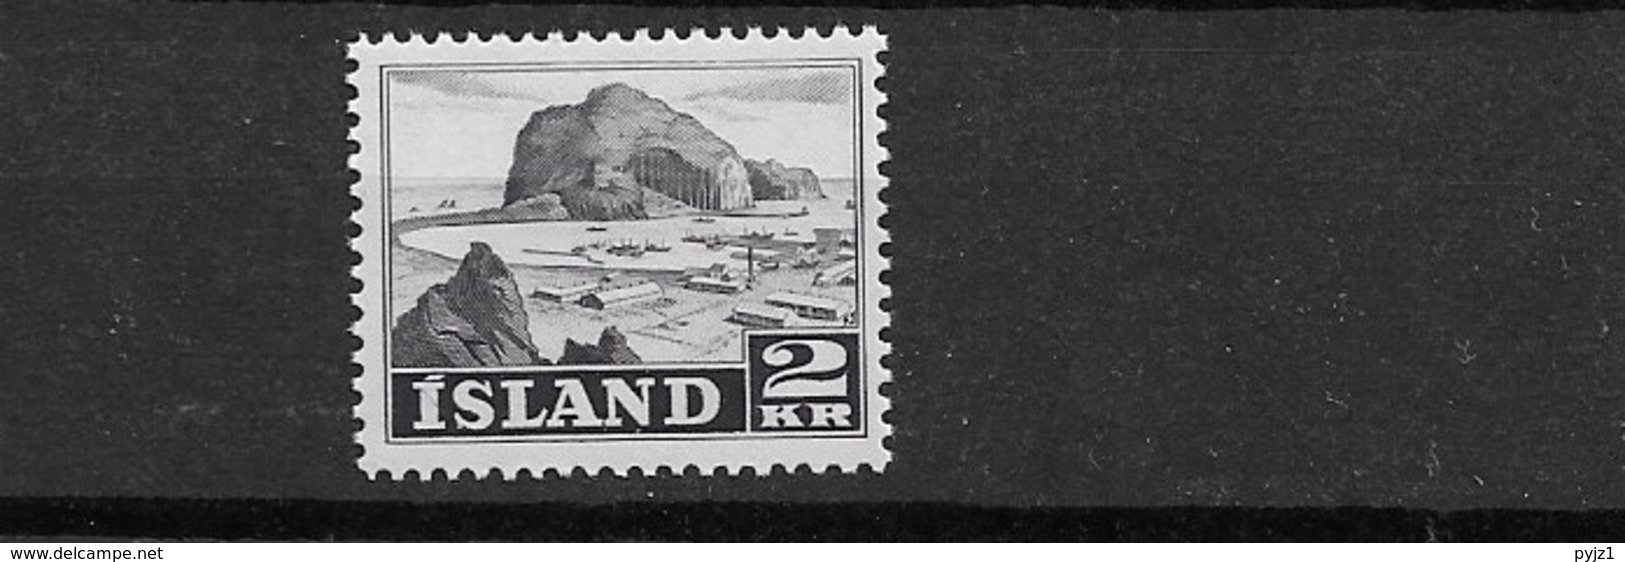 1950 MNH Iceland, Island, Mi 269 - Nuovi